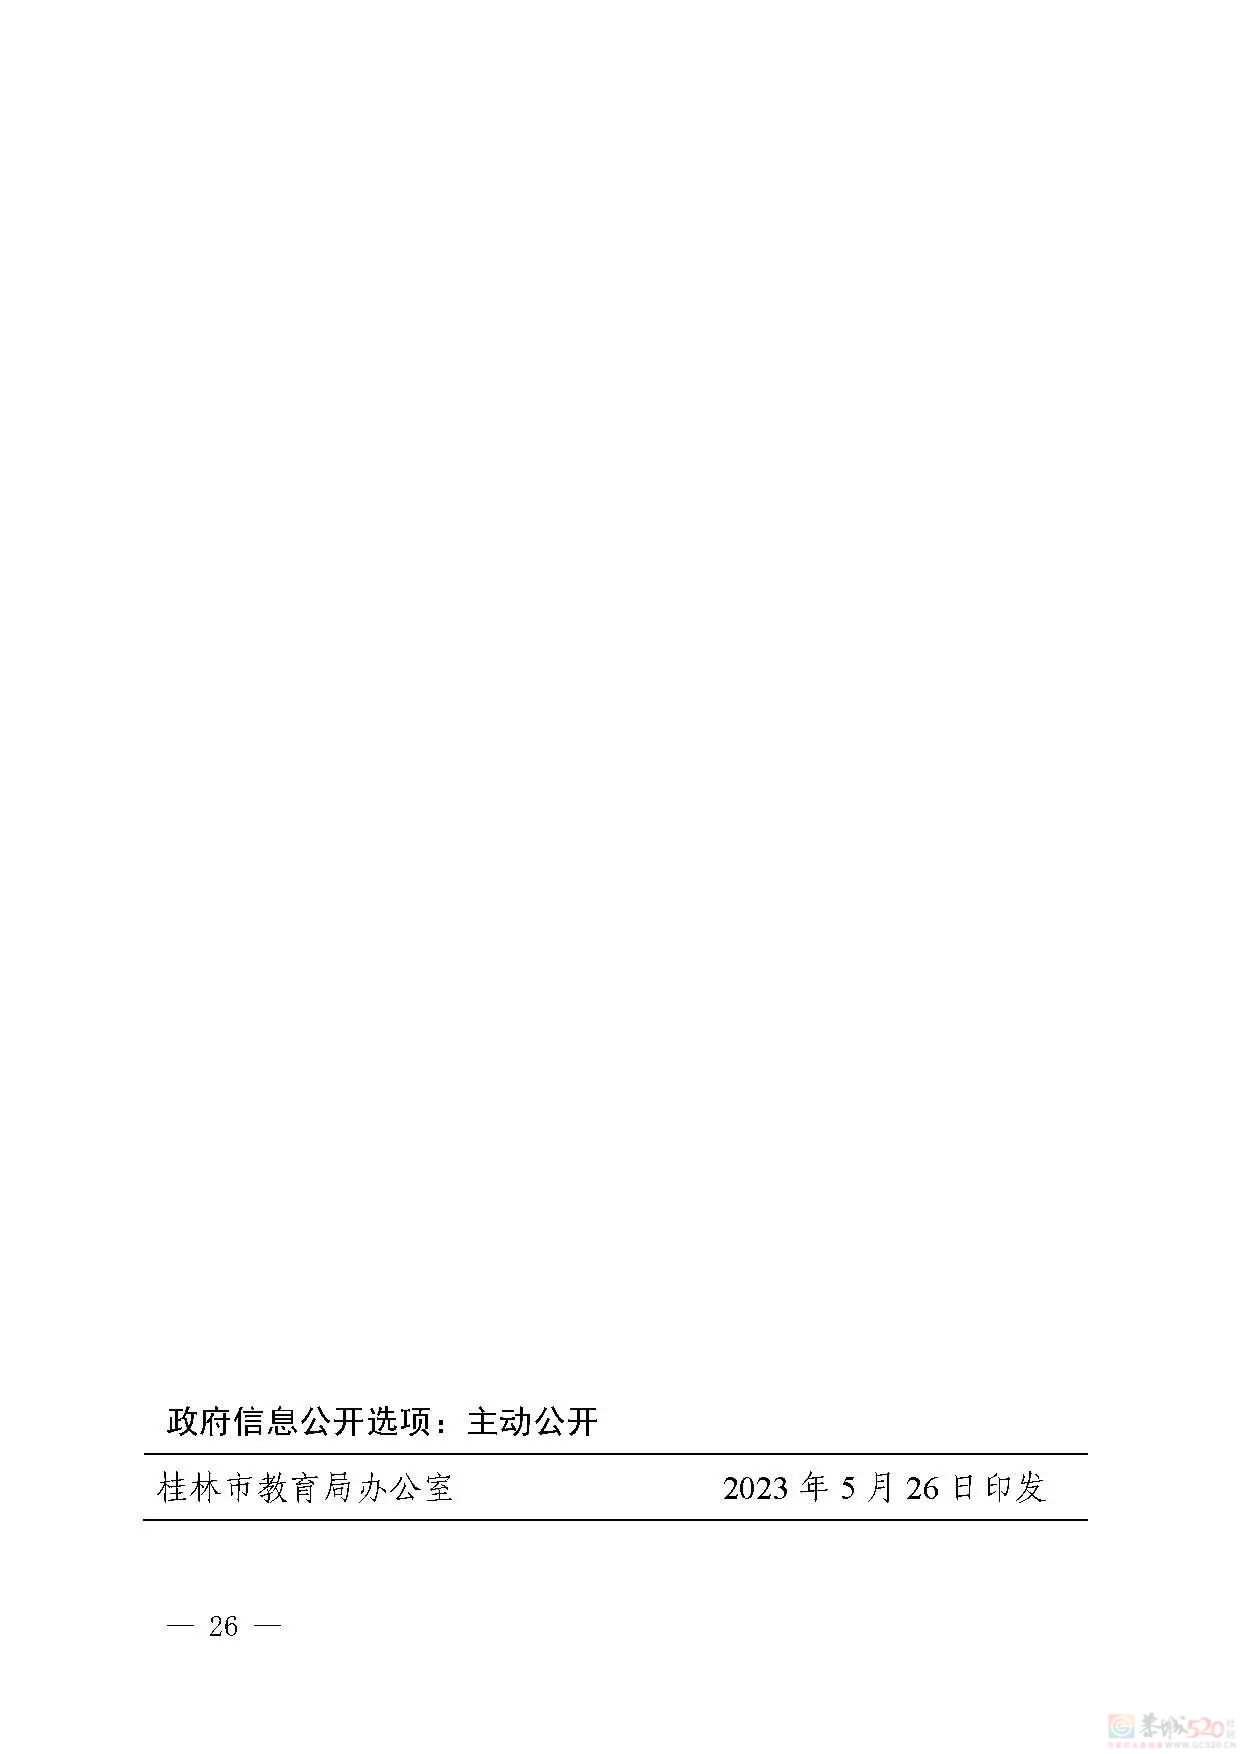 桂林市2023年初中学业考试与高中阶段学校招生工作方案发布175 / 作者:论坛小编01 / 帖子ID:307086